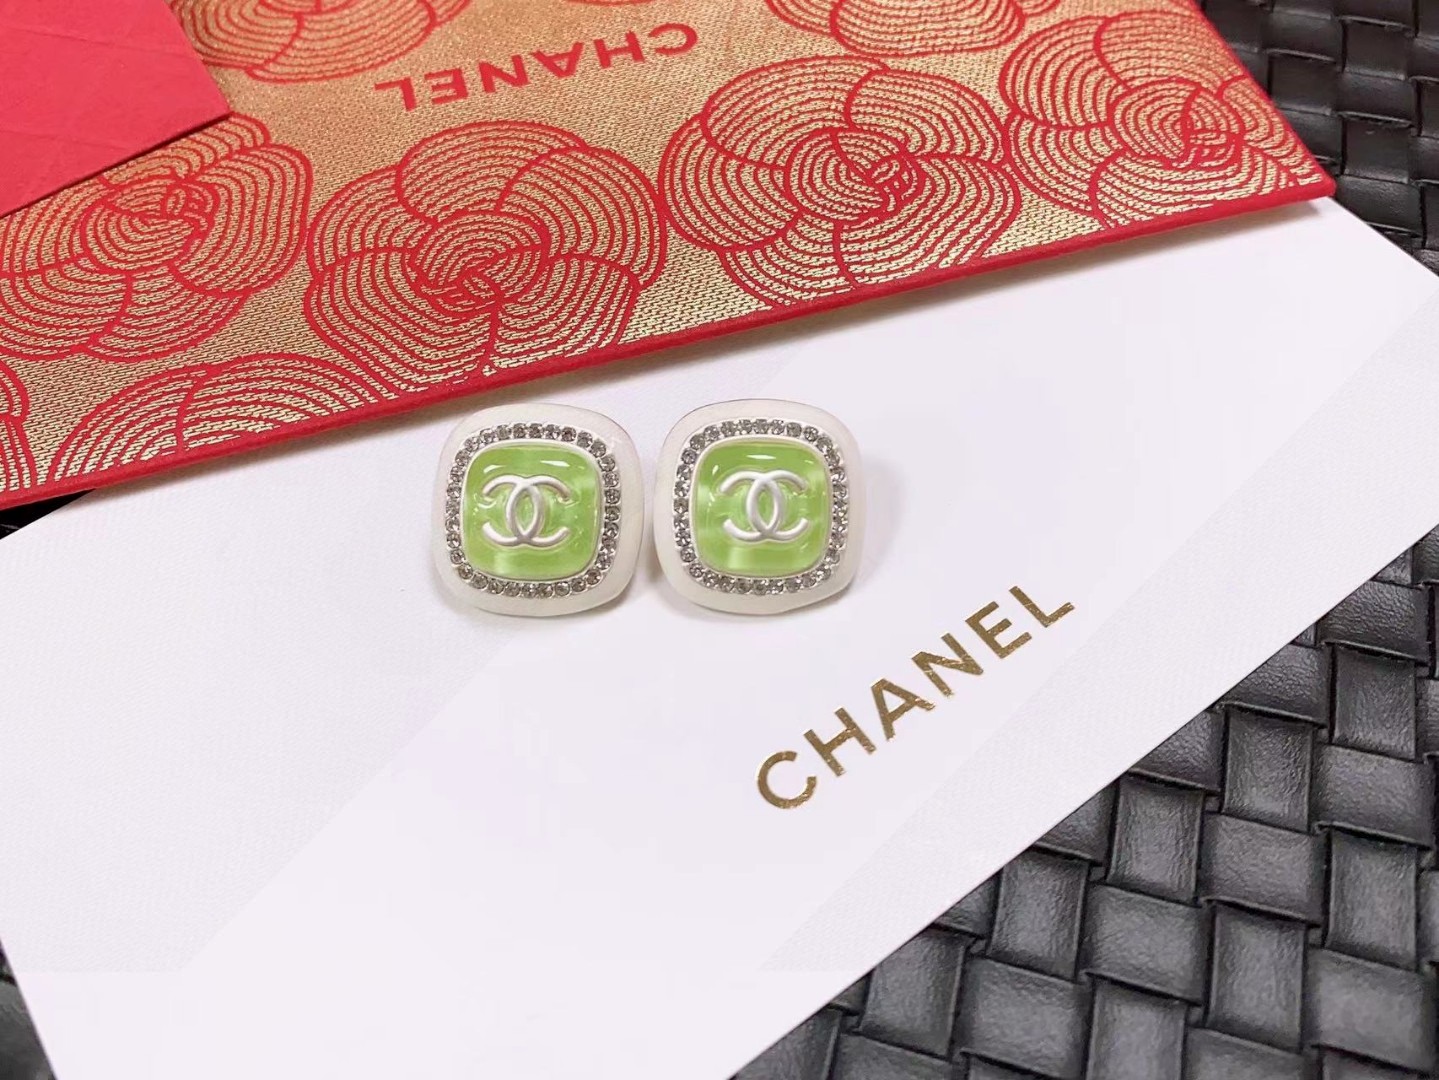 Chanel Jewelry Earring